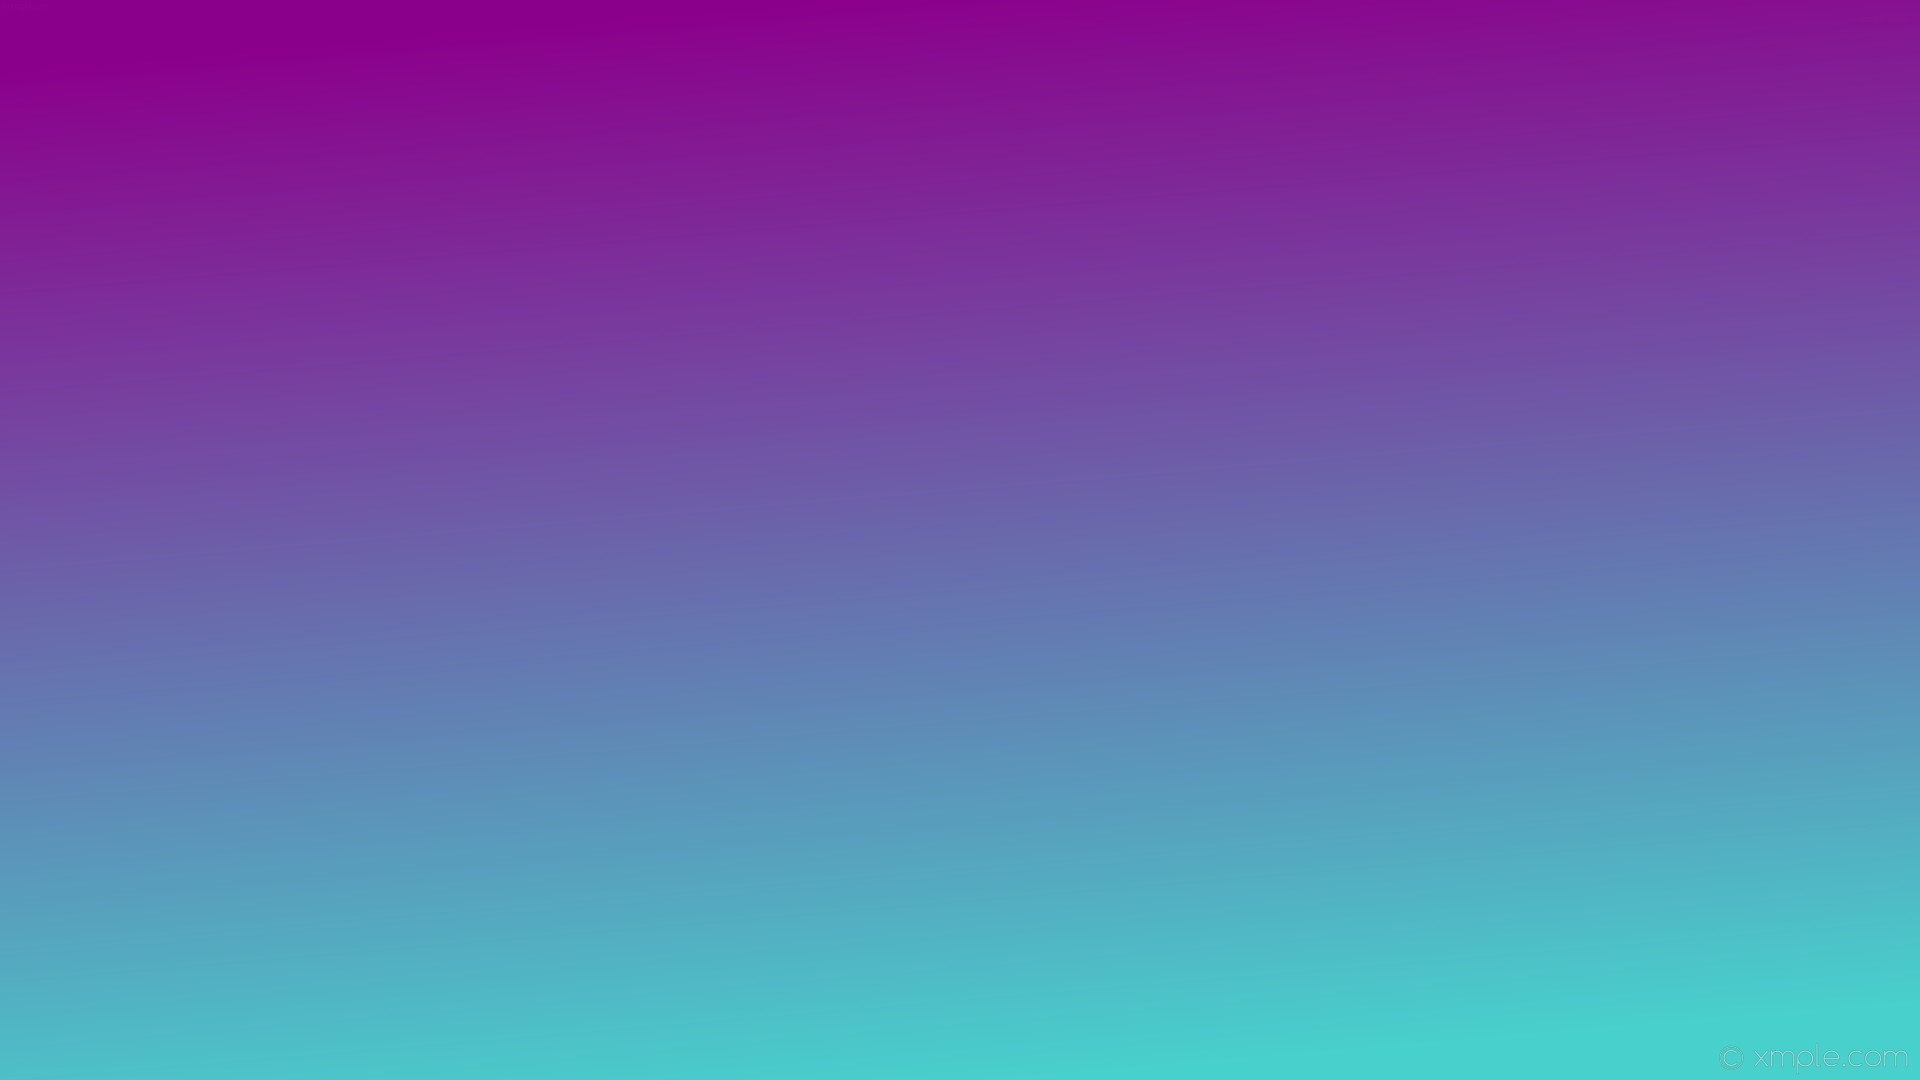 1920x1080 wallpaper blue purple gradient linear medium turquoise dark magenta #48d1cc  #8b008b 285Â°